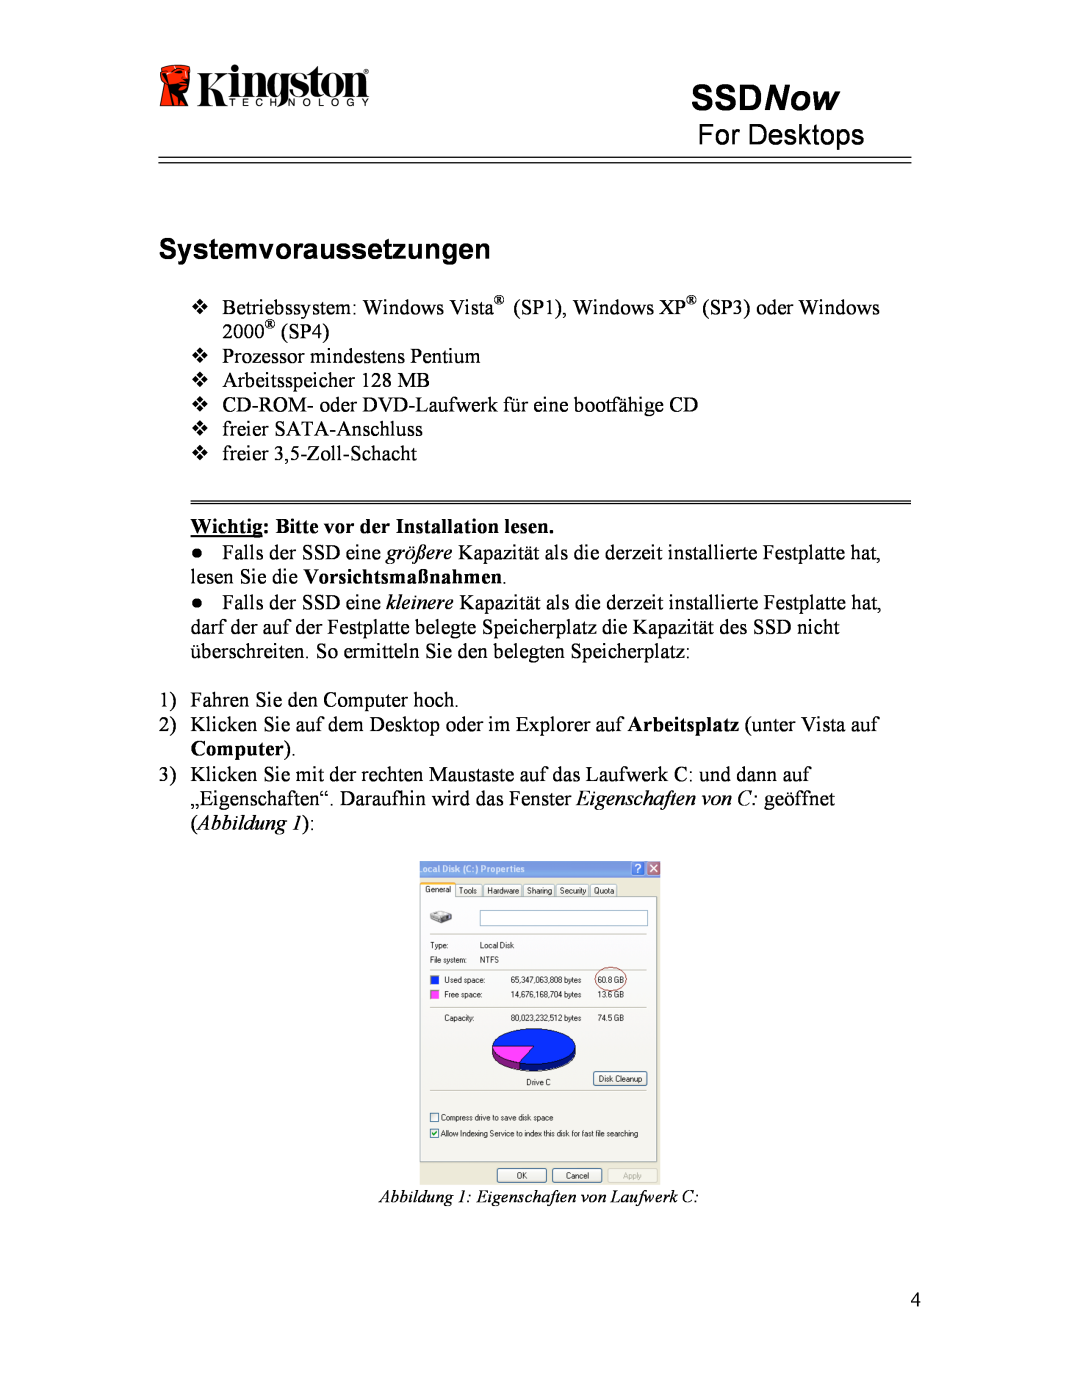 Kingston Technology 07-16-2009 manual Systemvoraussetzungen, SSDNow, For Desktops, Wichtig Bitte vor der Installation lesen 